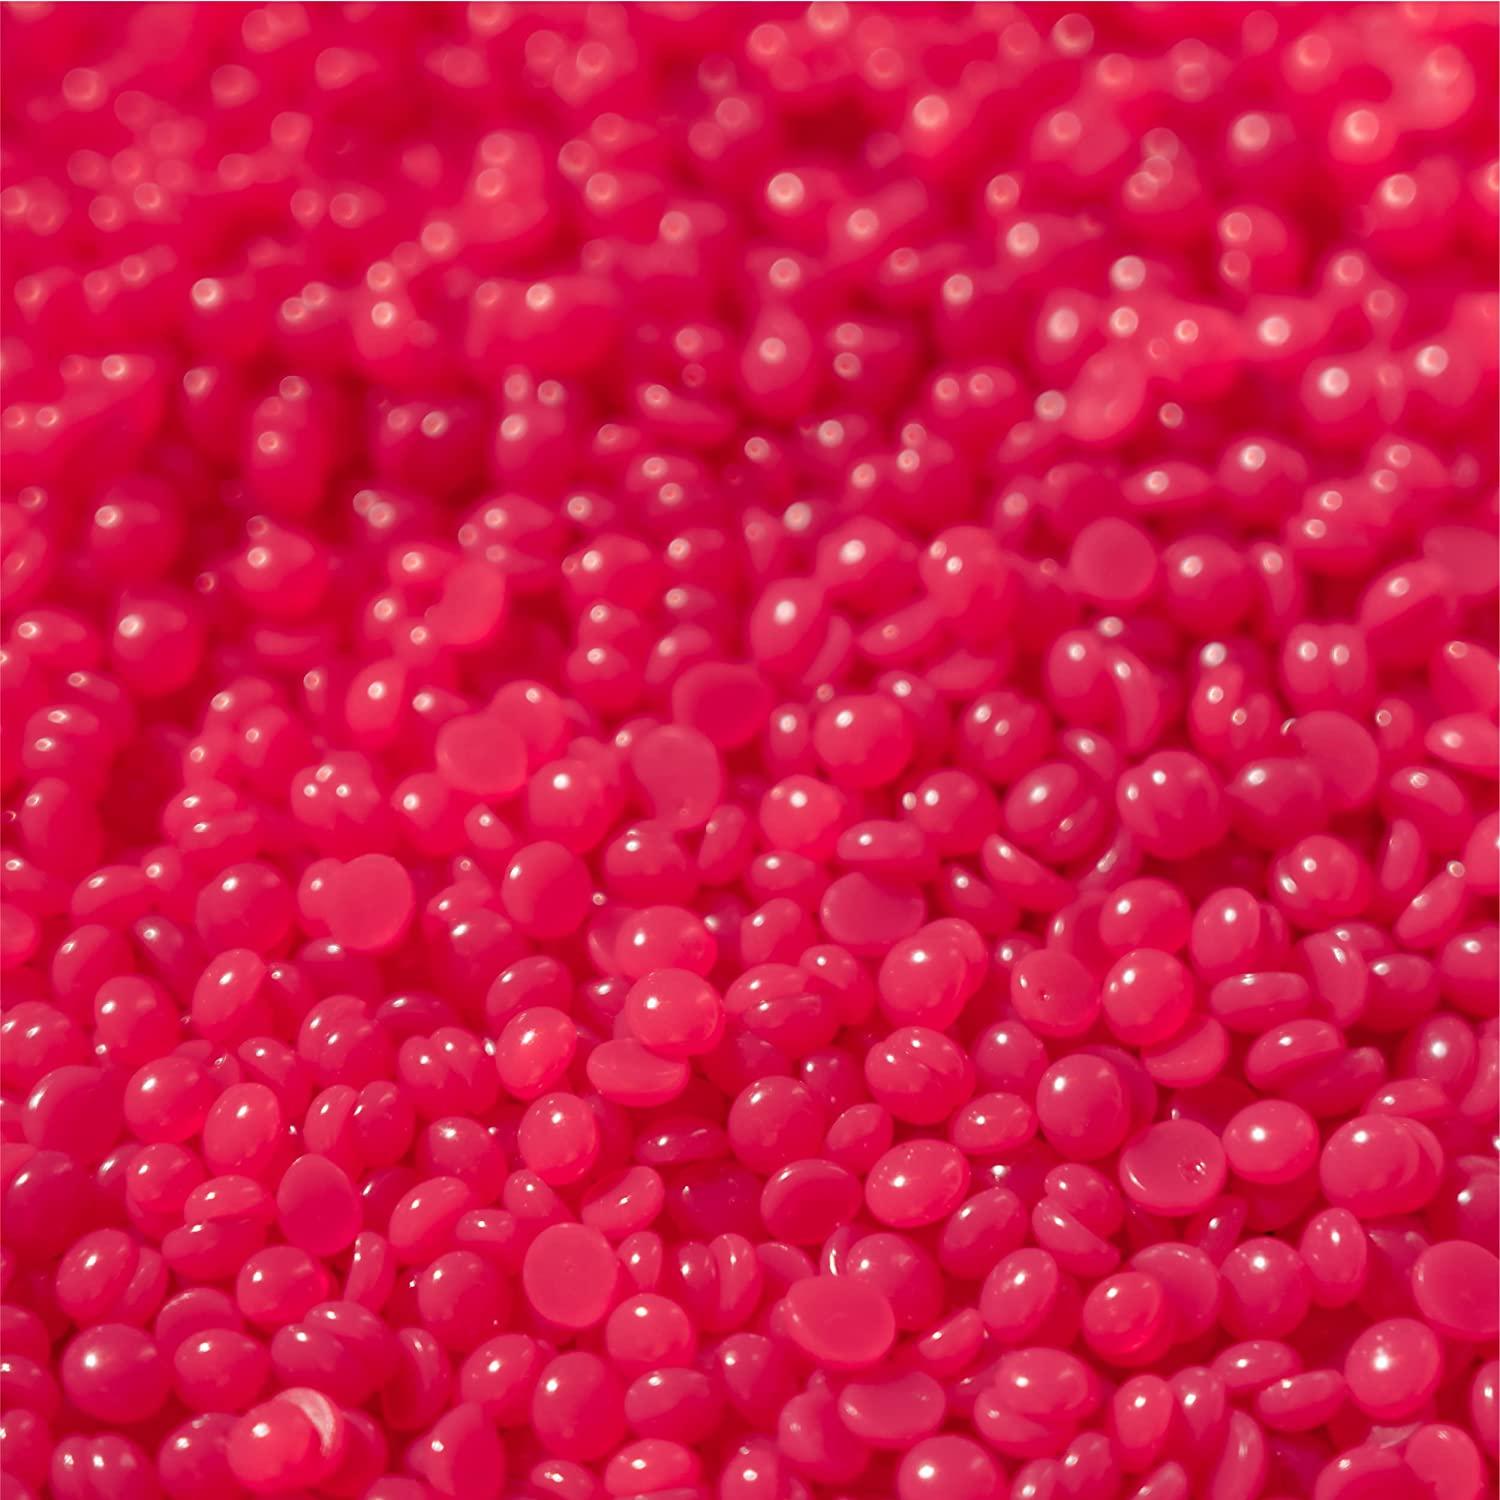 Dermwax Pink Chiffon Hard Wax Beads